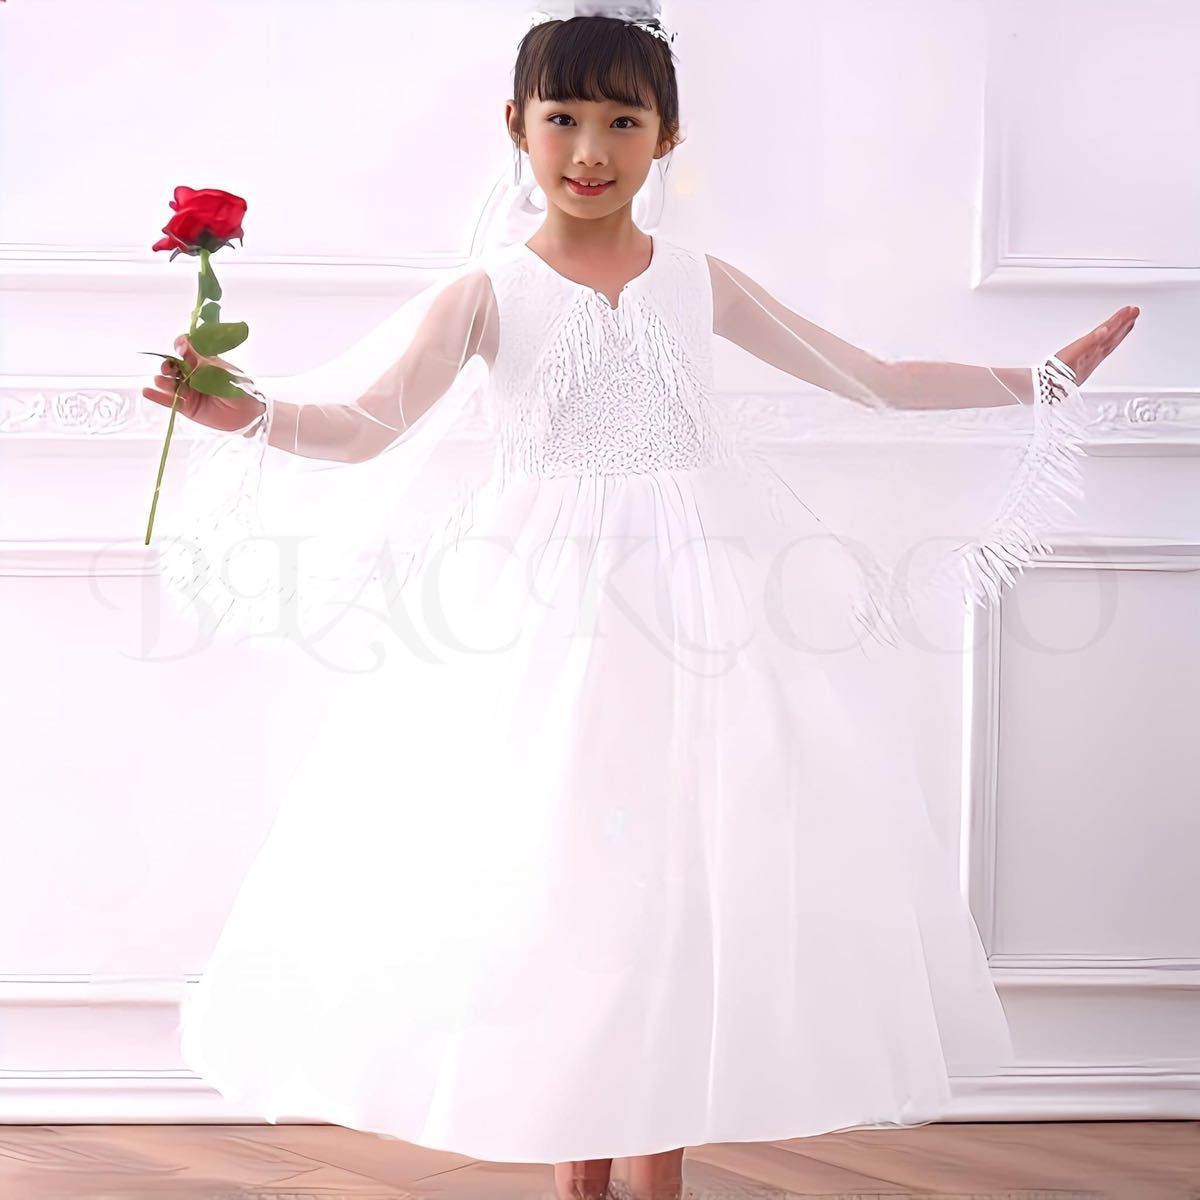 ドレス ワンピース フリンジ ホワイト 結婚式 発表会 女の子 こども 白 ウェディング 可愛い 綺麗 おしゃれ 入学式 卒業式